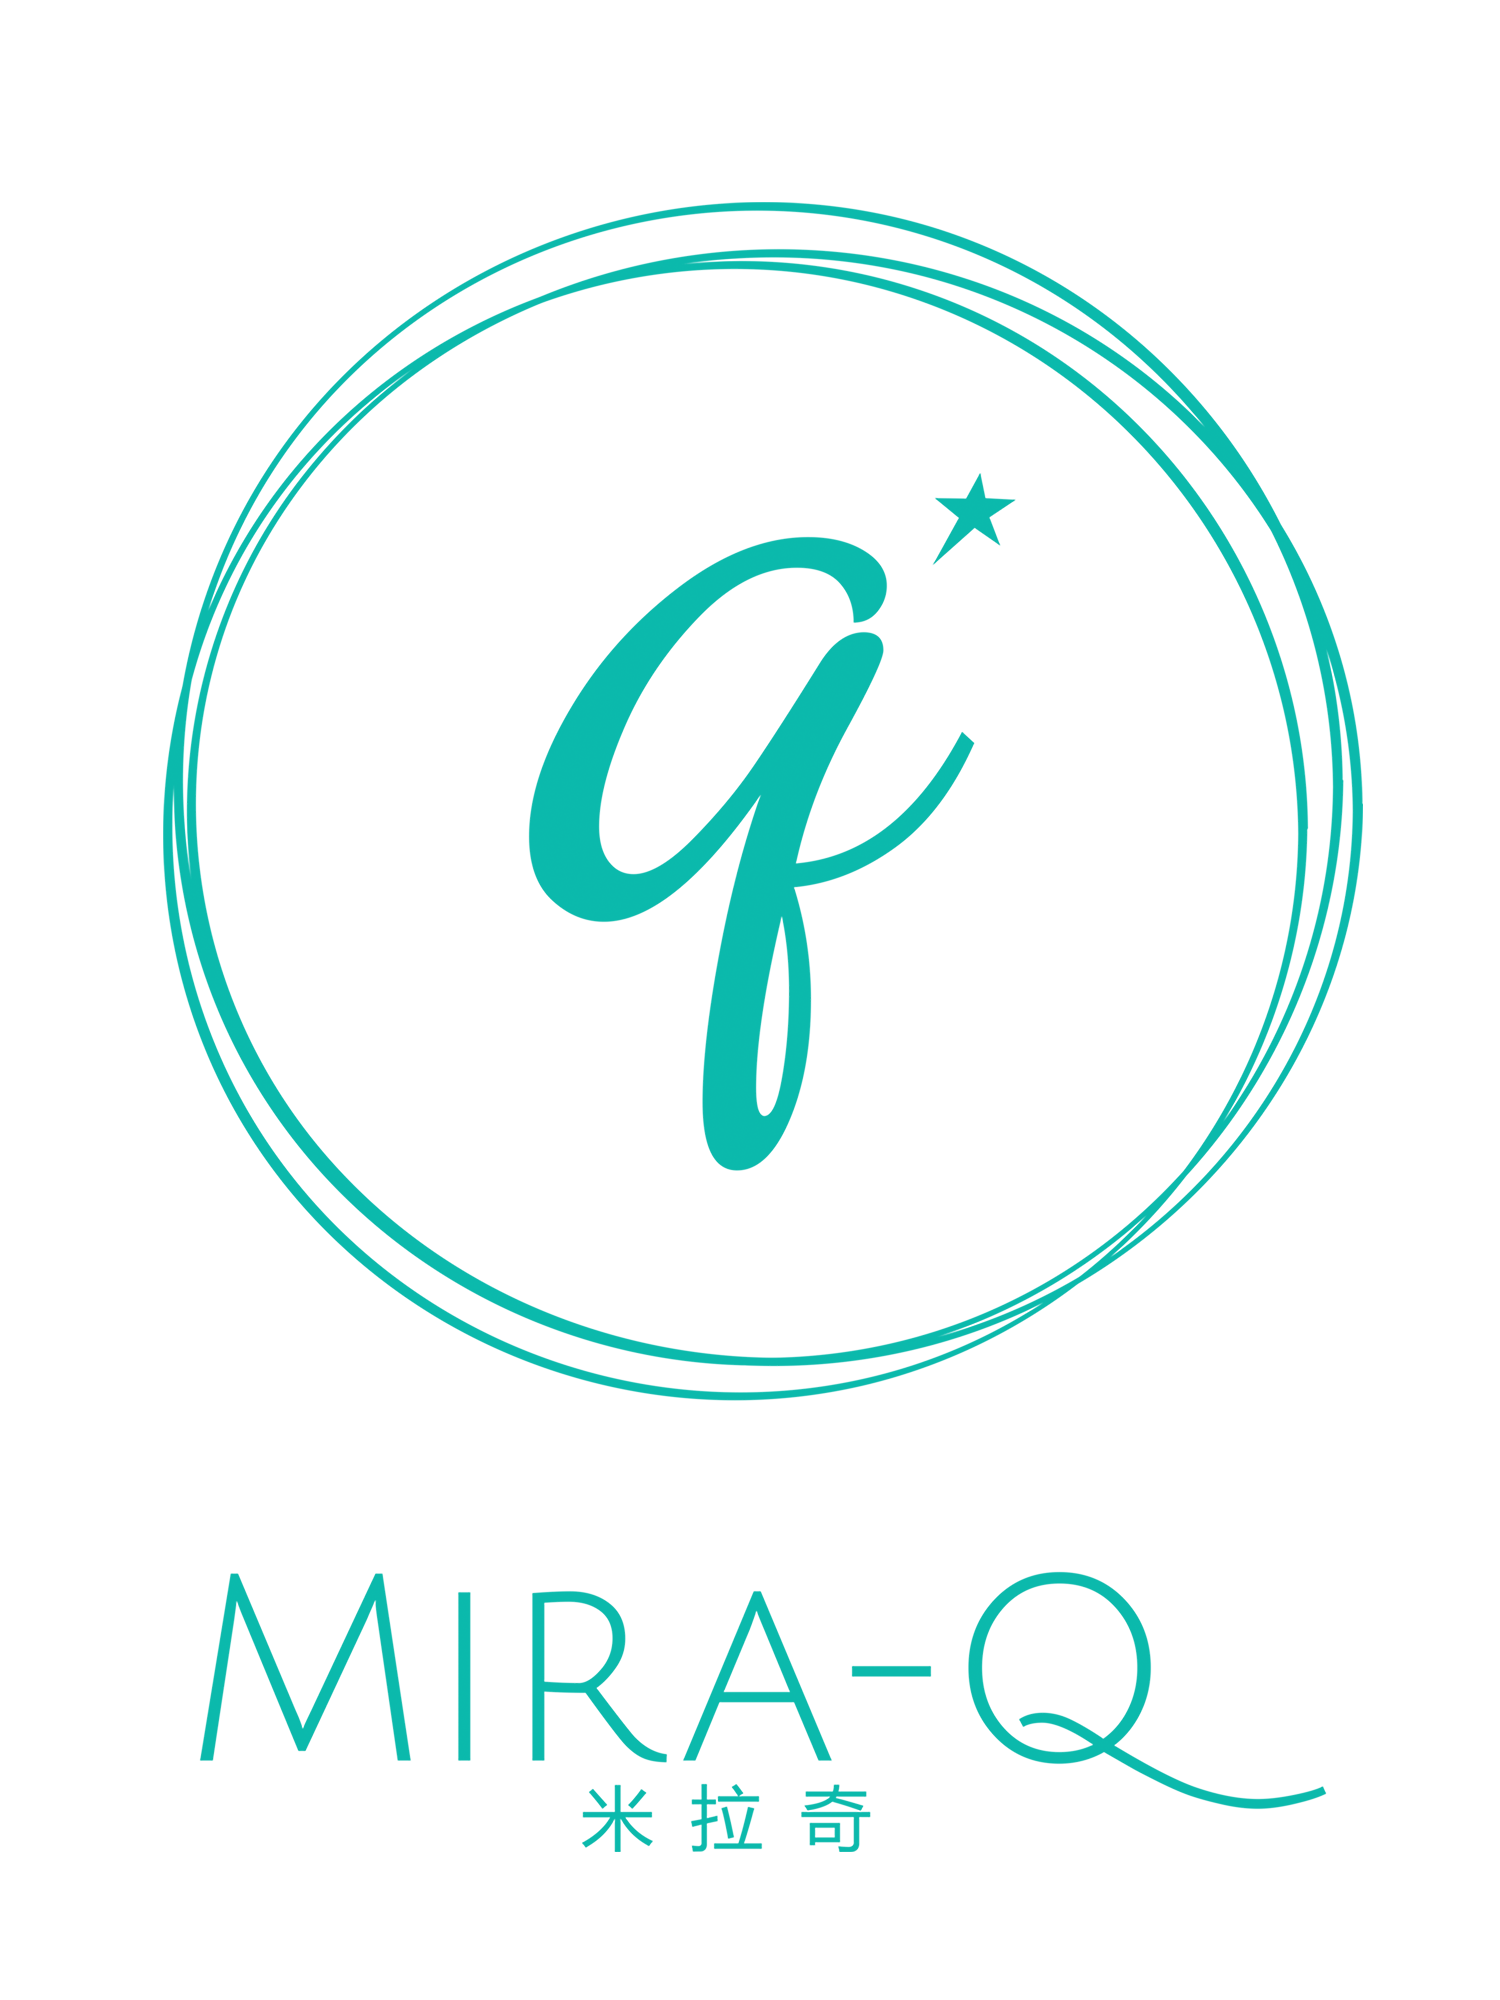 Mira-Q Official